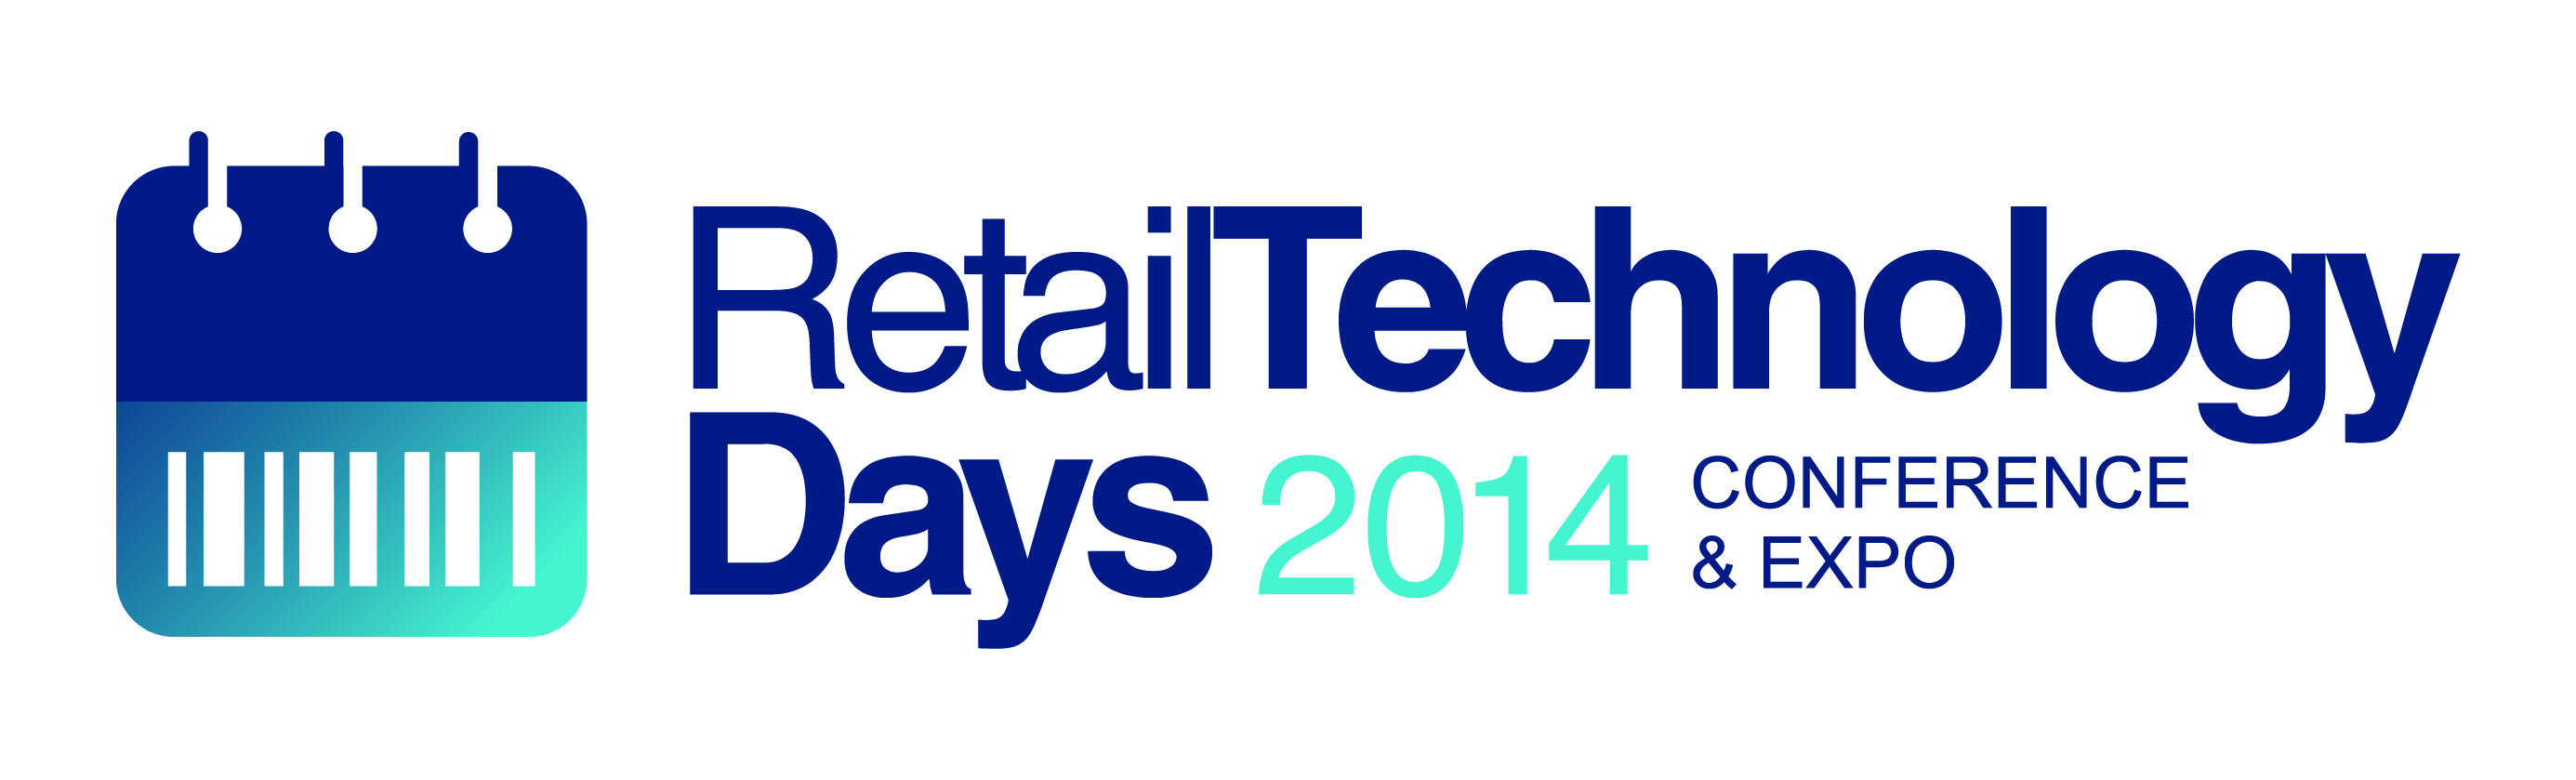 Retail Technology Days 2014: detaliści razem z branżą IT